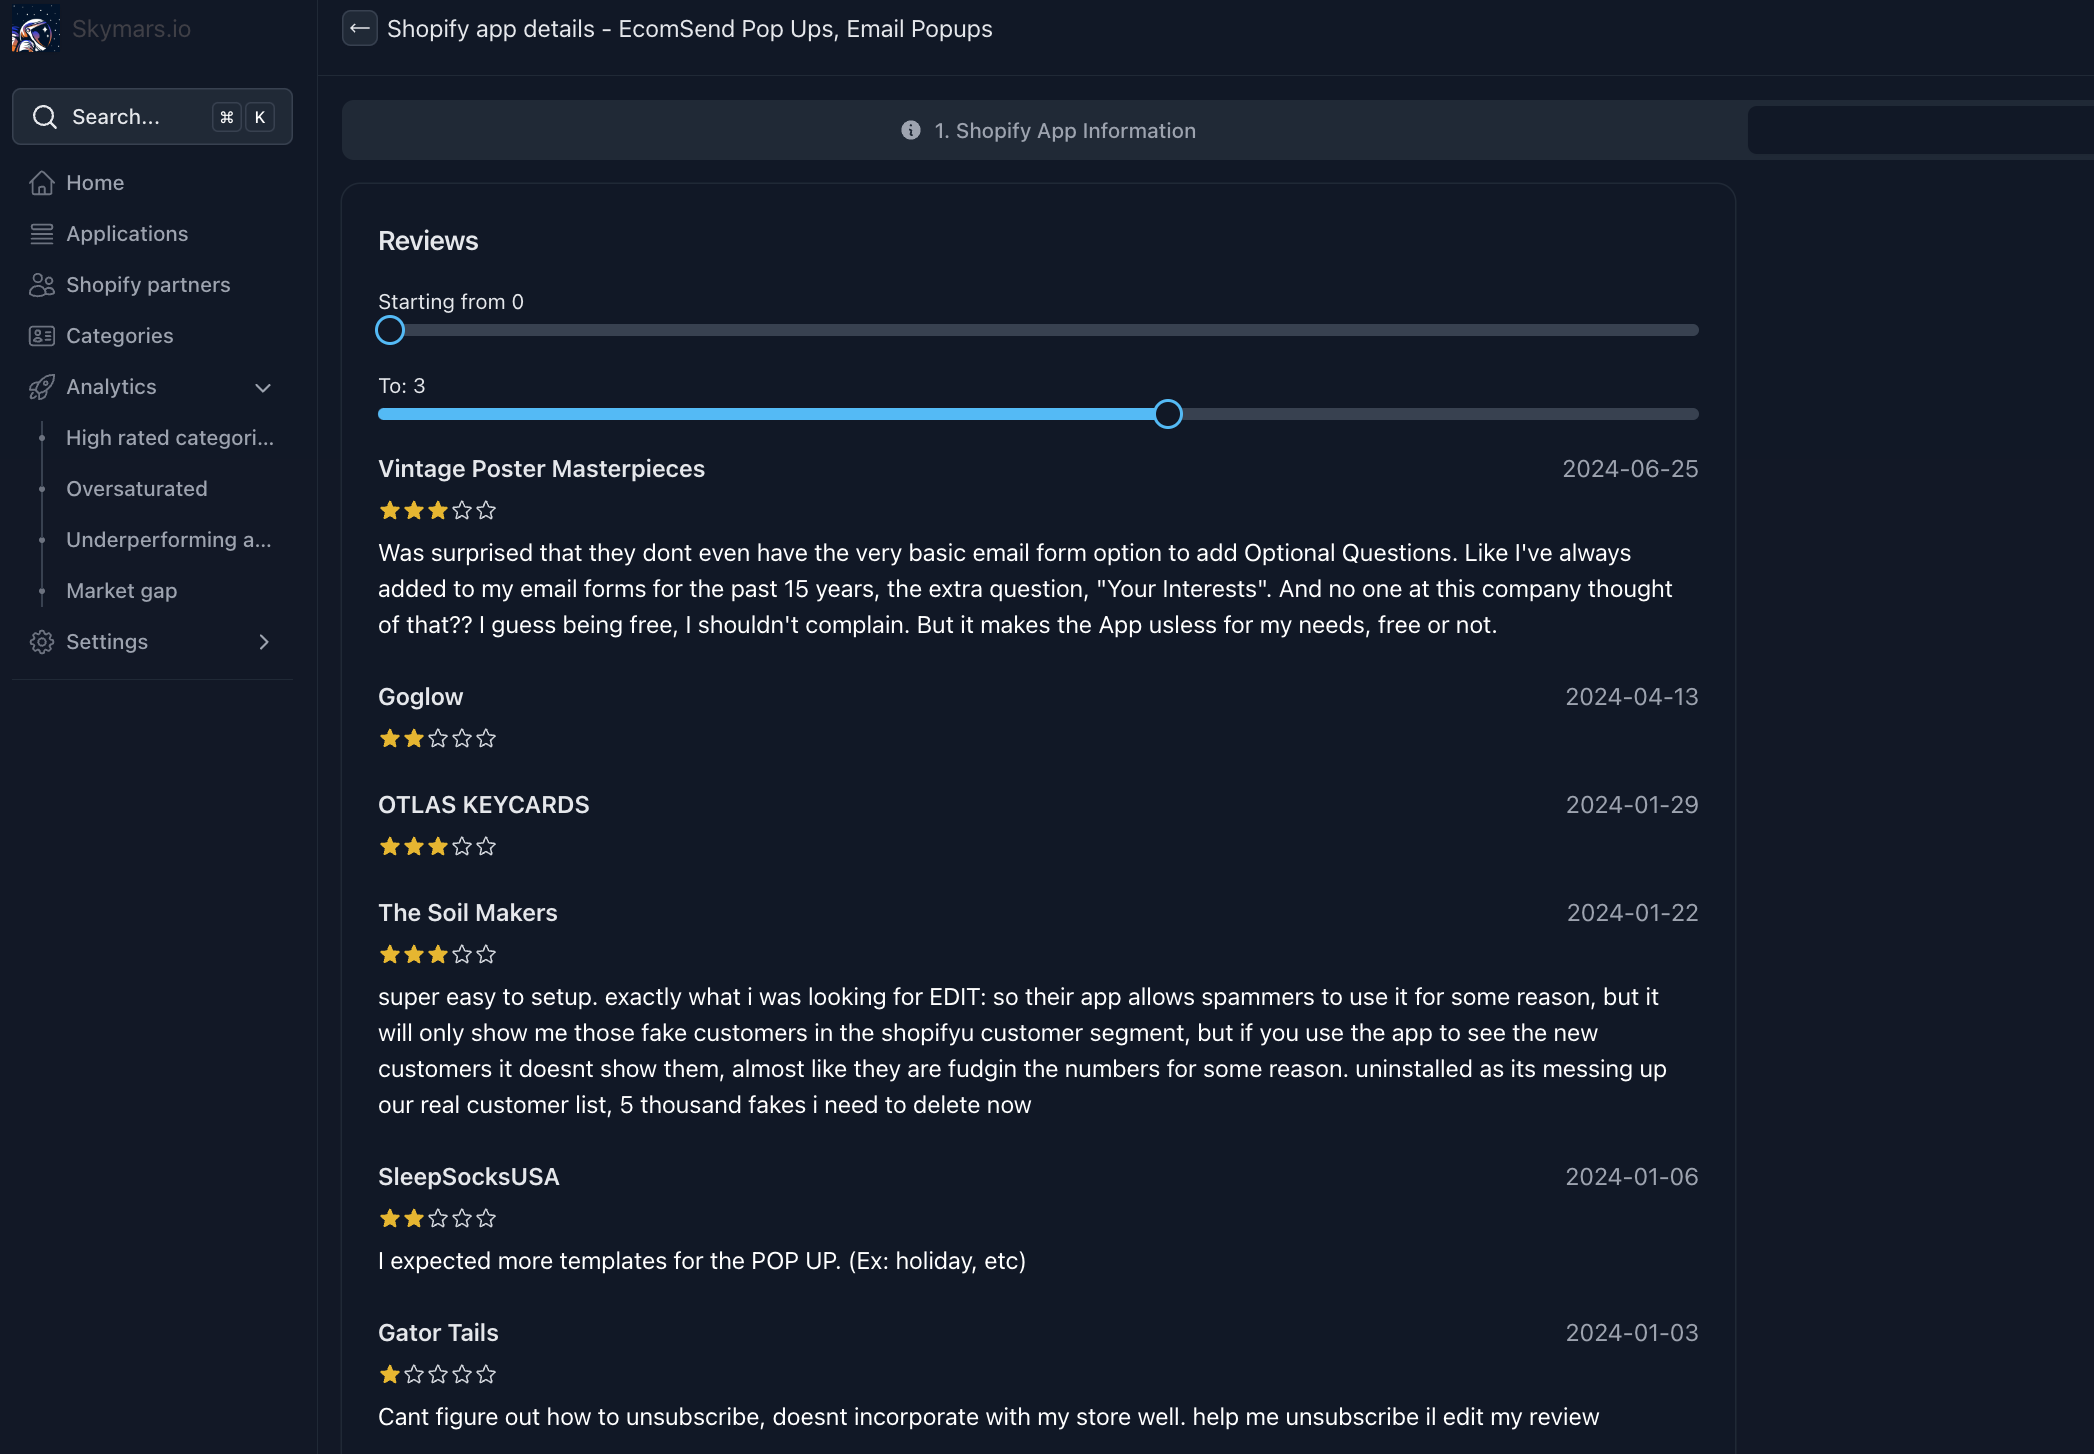 skymars reviews